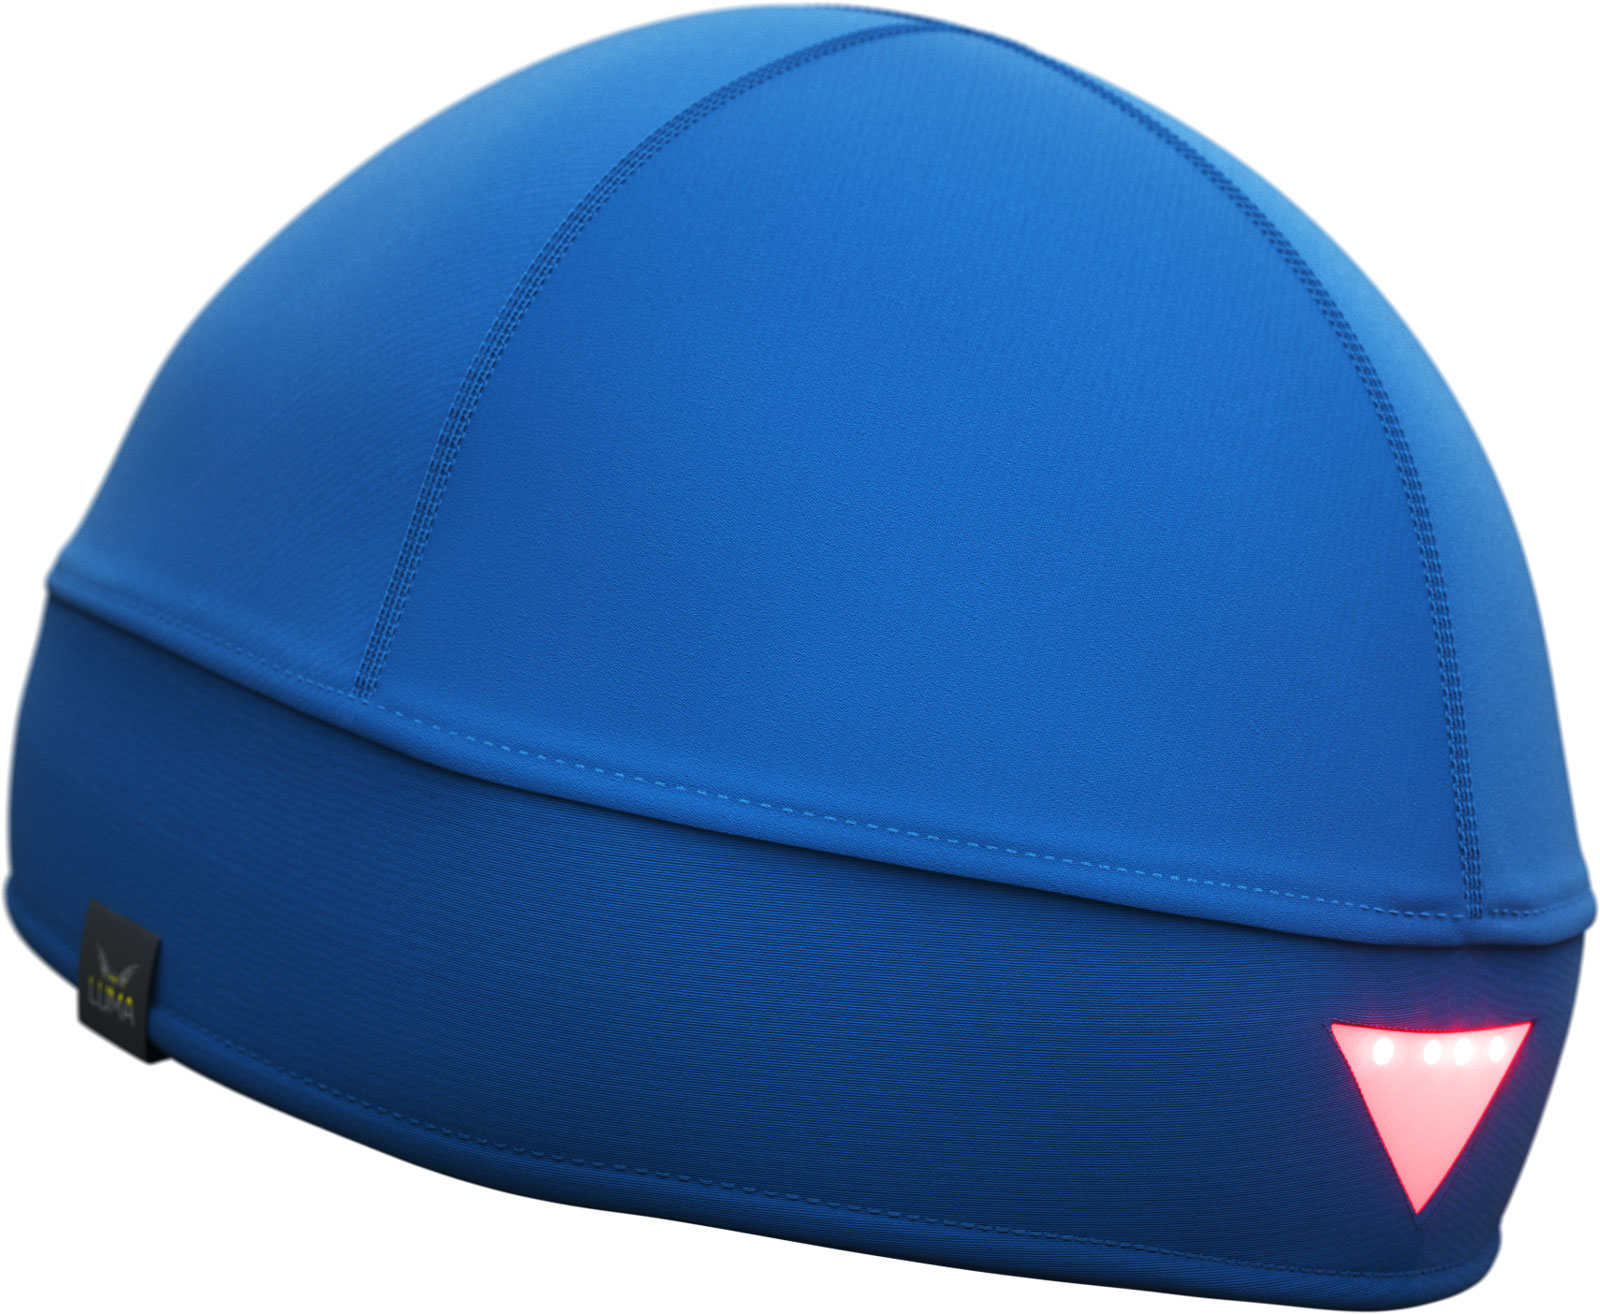 Mütze mit integrierter Stirnlampe